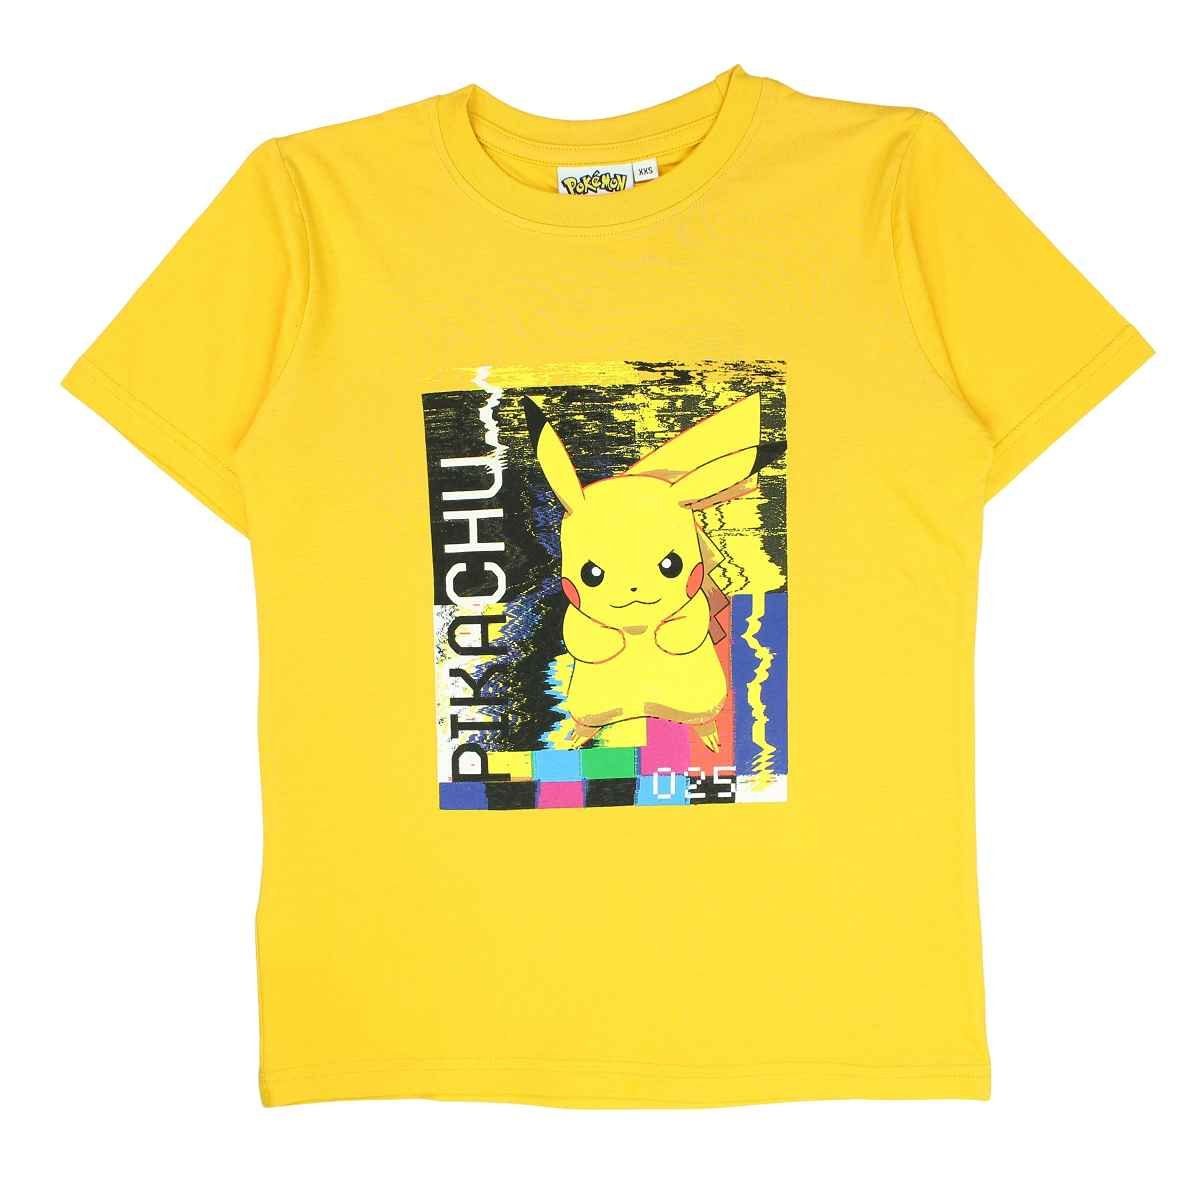 Jungen in Kurzarmshirt T-Shirt Größe cm 140-176 Pikachu POKÉMON